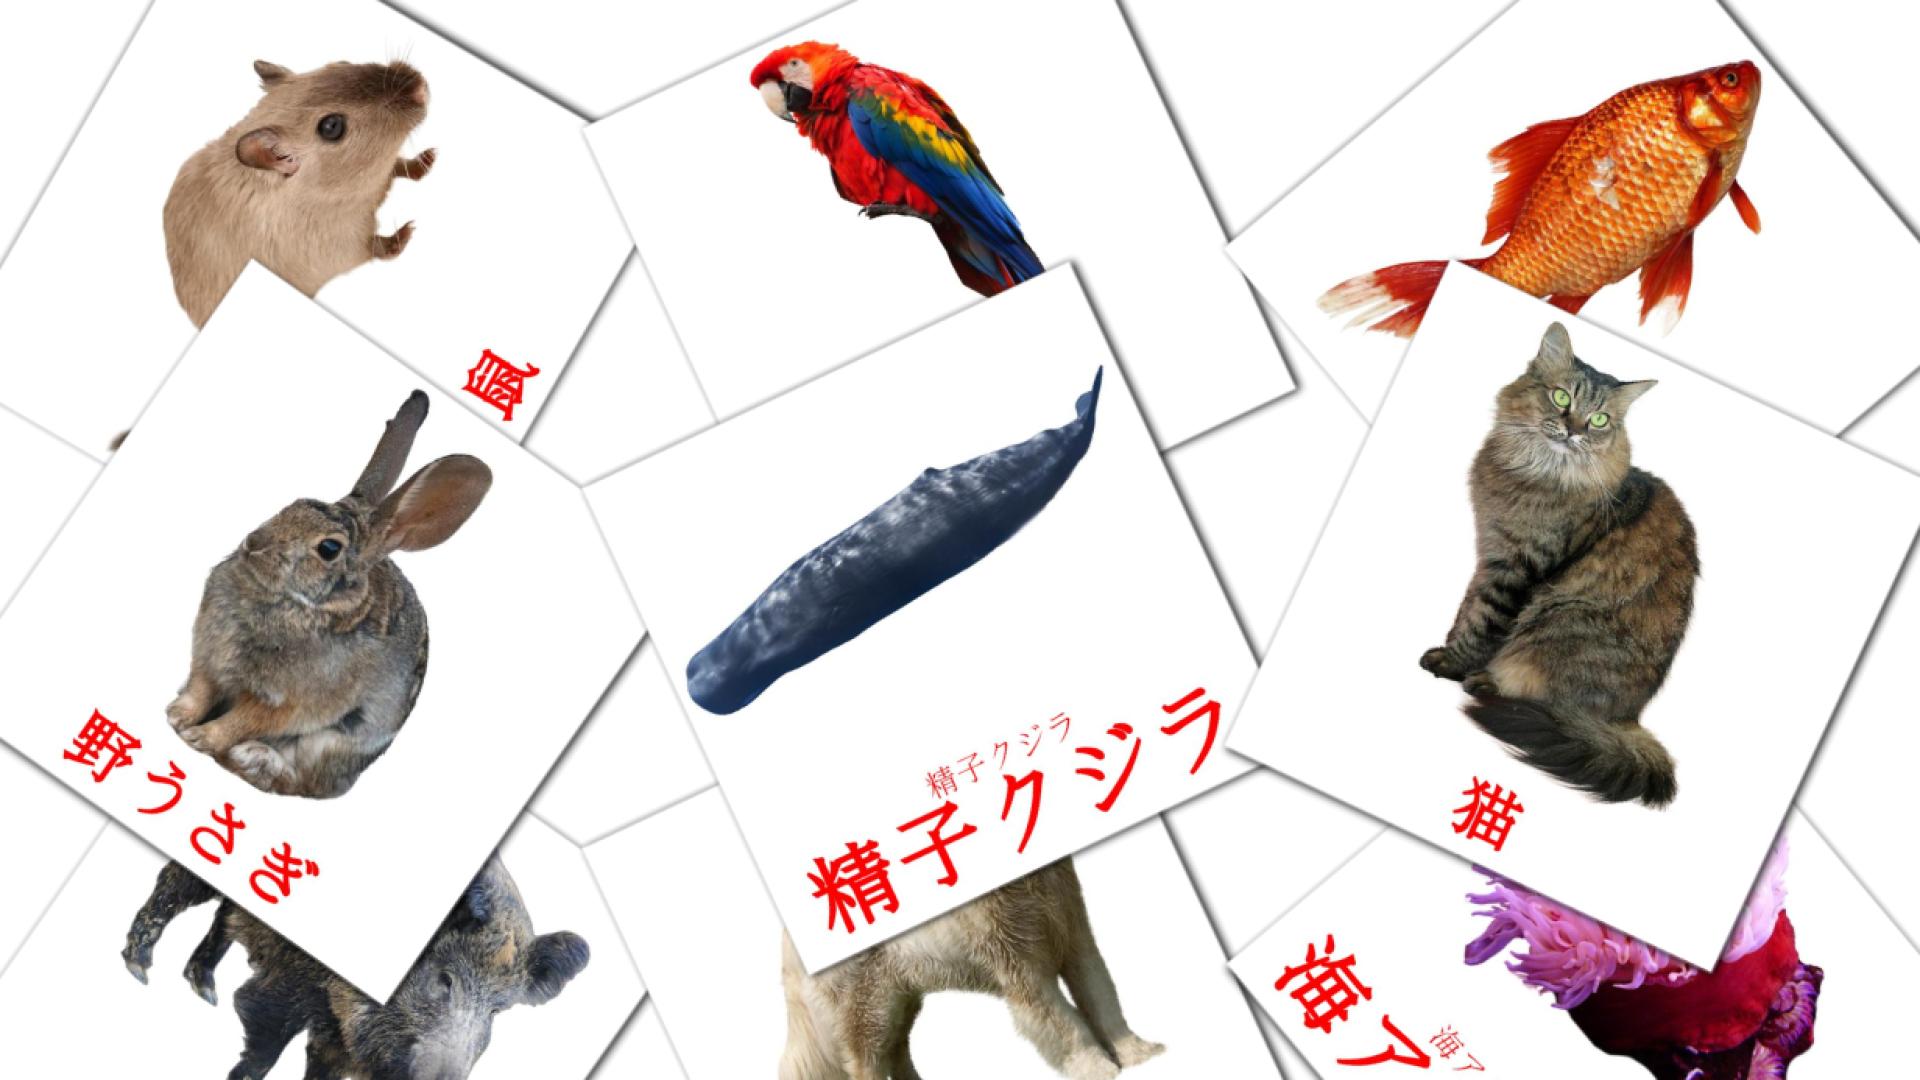 Japanisch 動物 - どうぶつe Vokabelkarteikarten